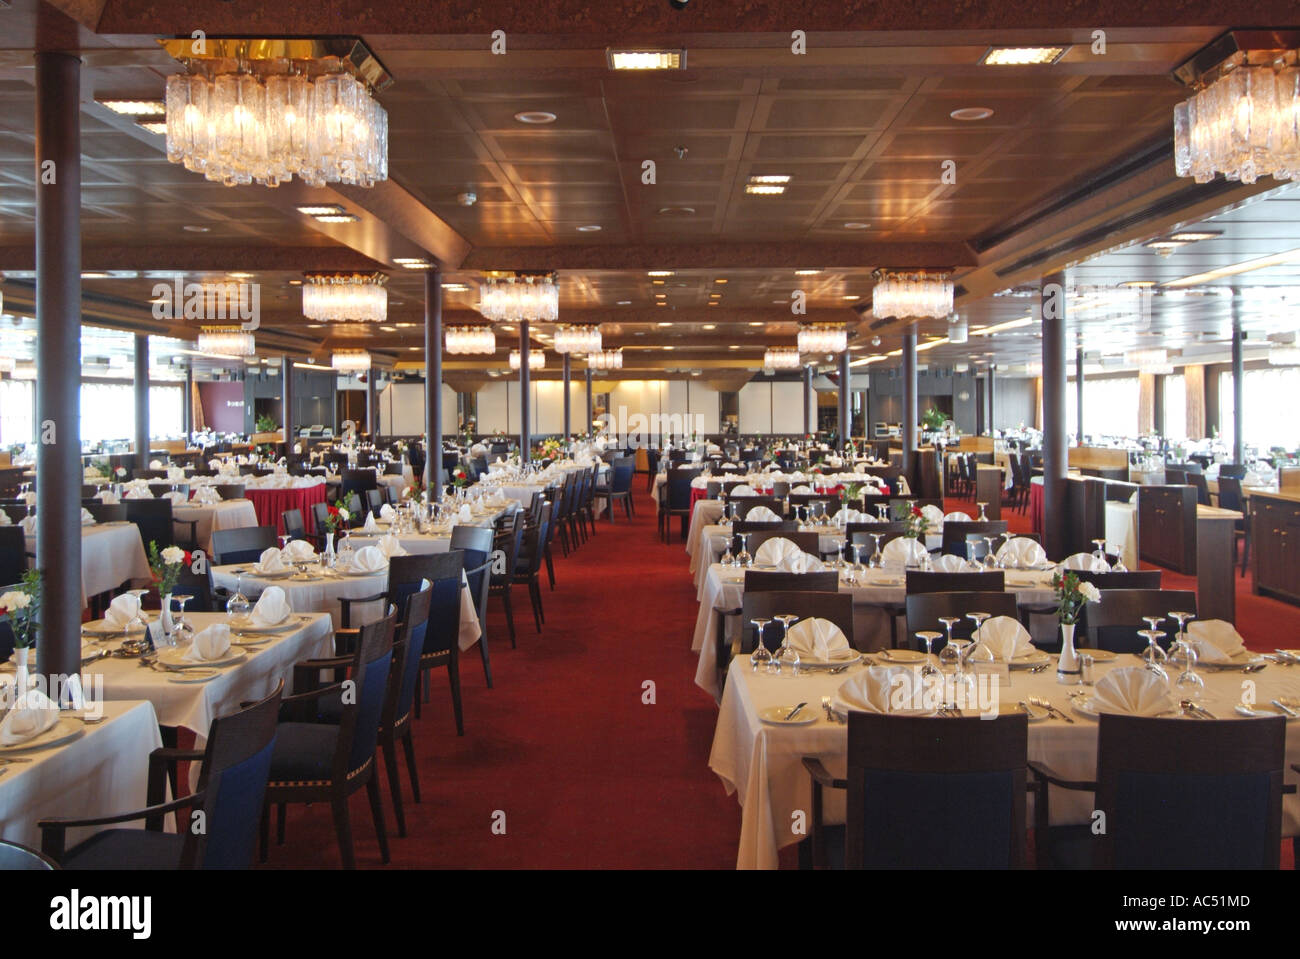 Sala da pranzo tavoli del ristorante preparati per la cena interno della nave da crociera nave da crociera nave da crociera in crociera nel Mar Mediterraneo Foto Stock